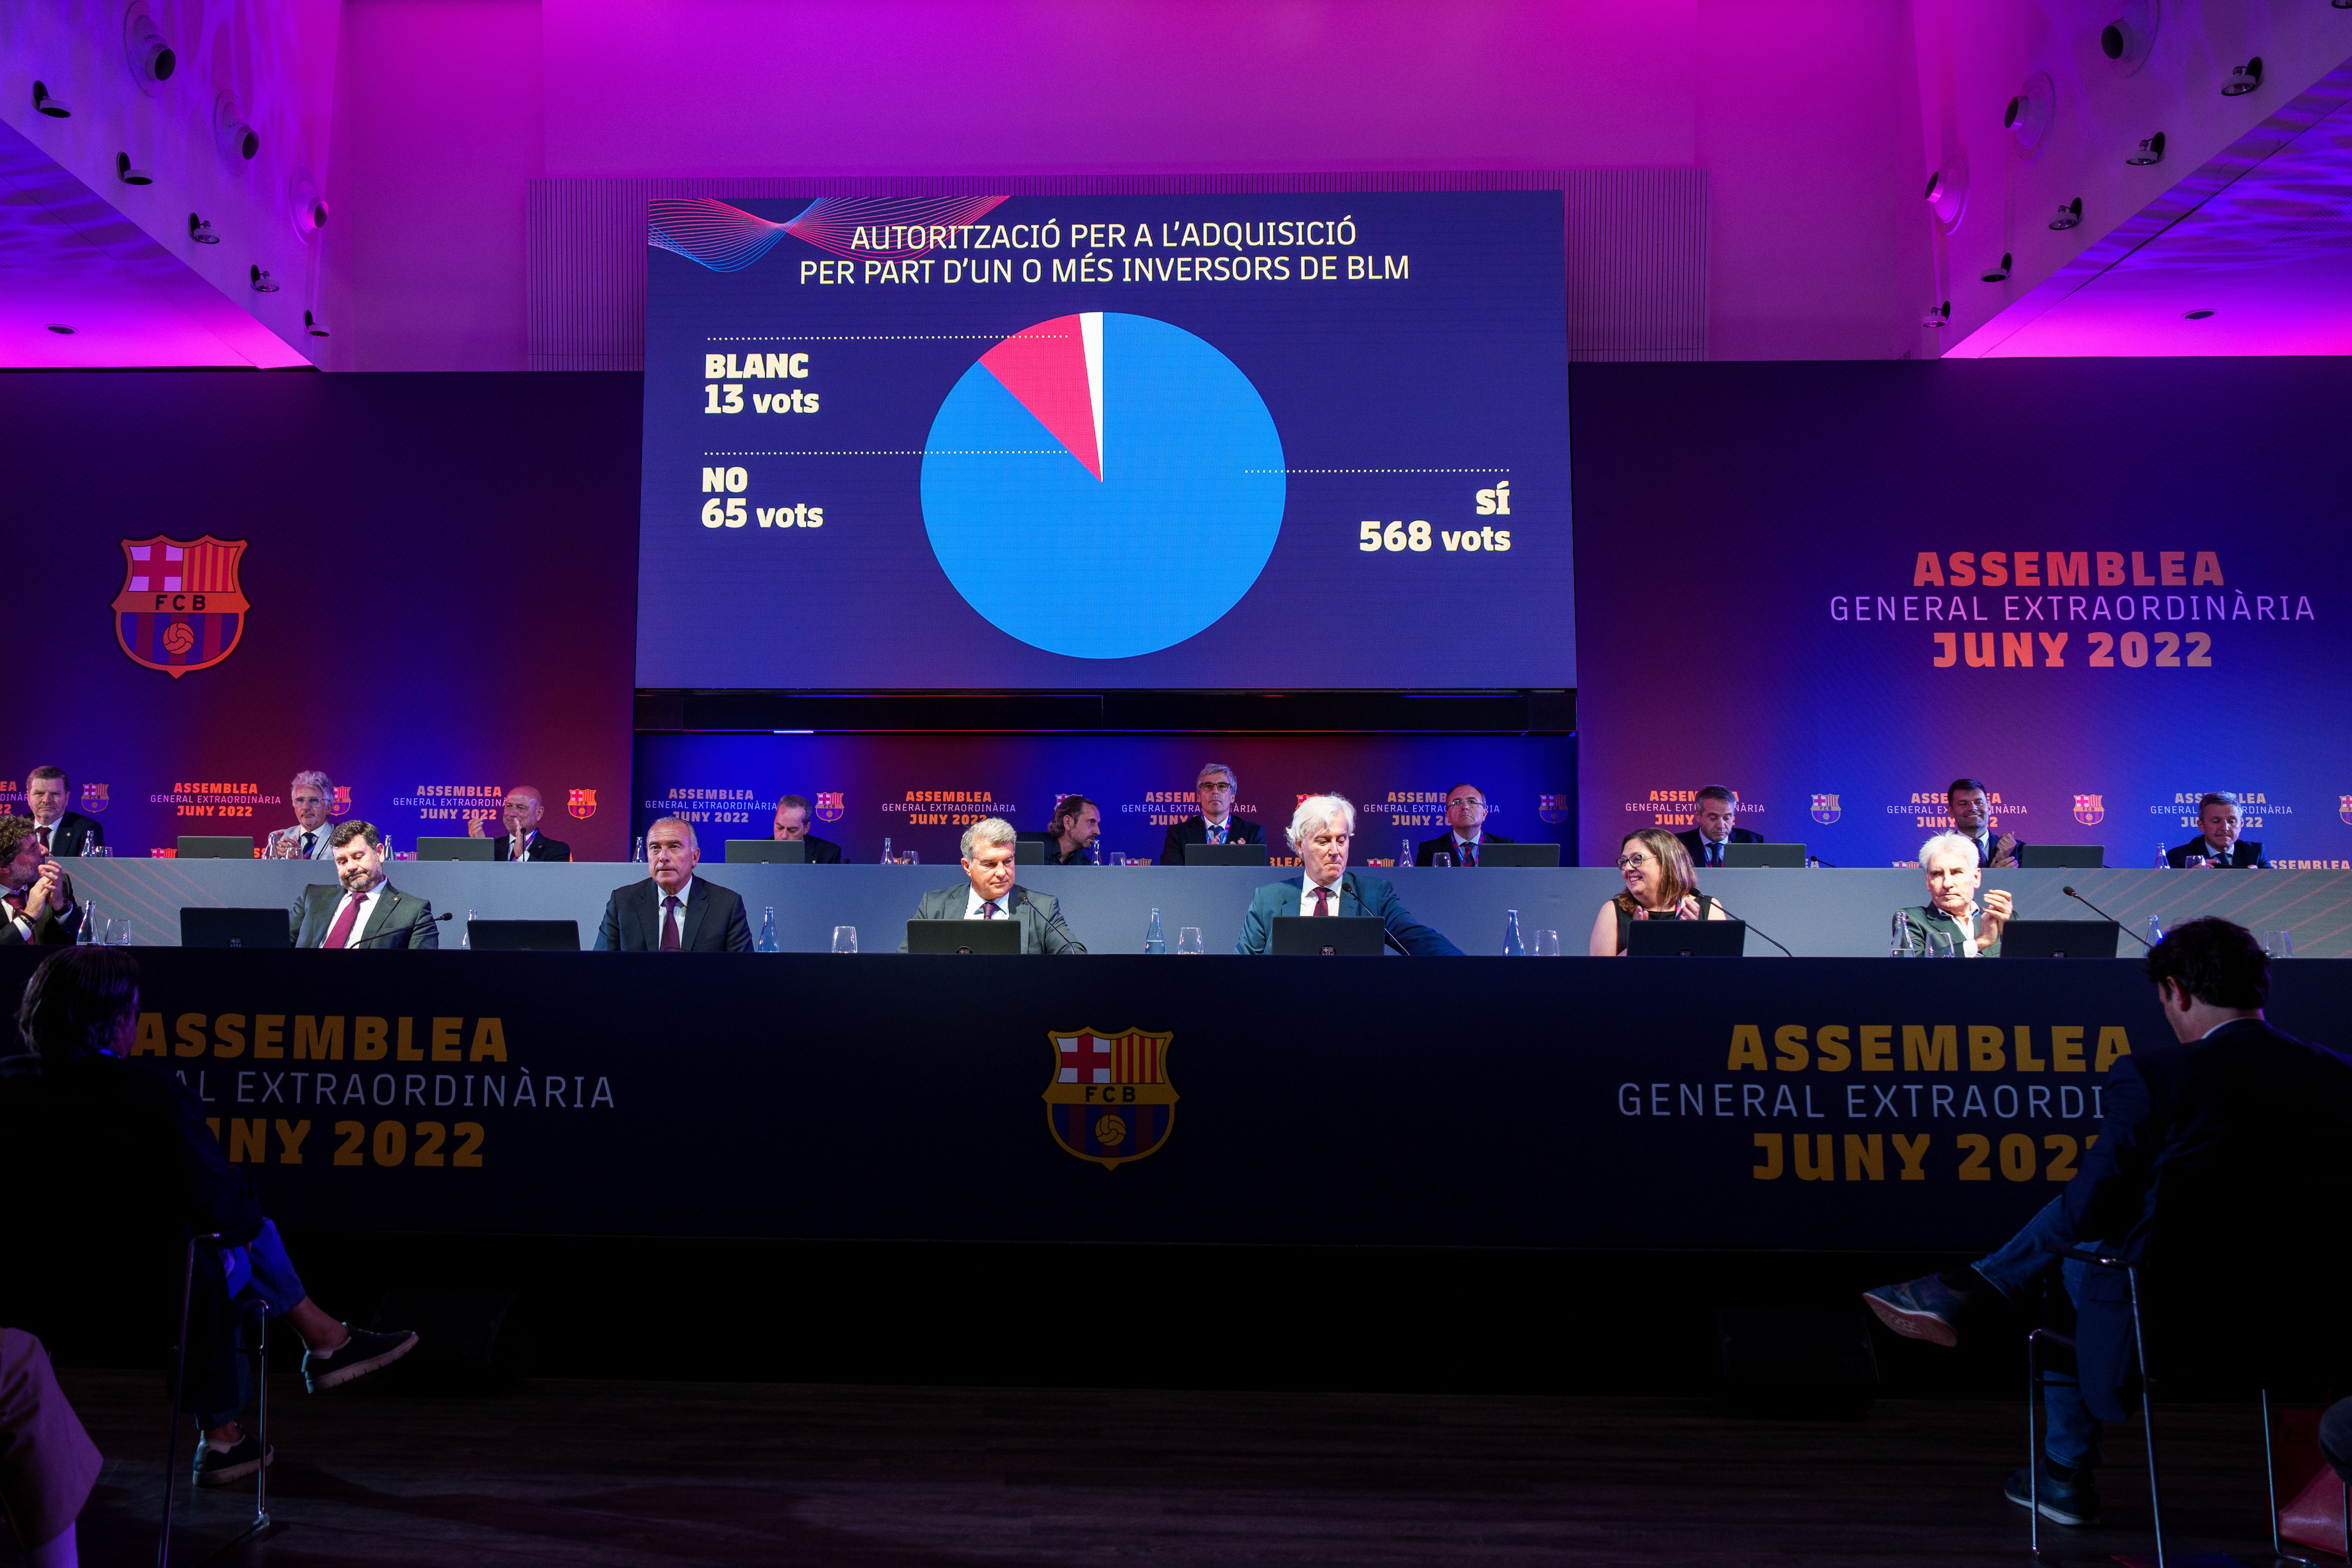 Los socios del Barça aprueban la venta del 49,9% de BLM / FCB